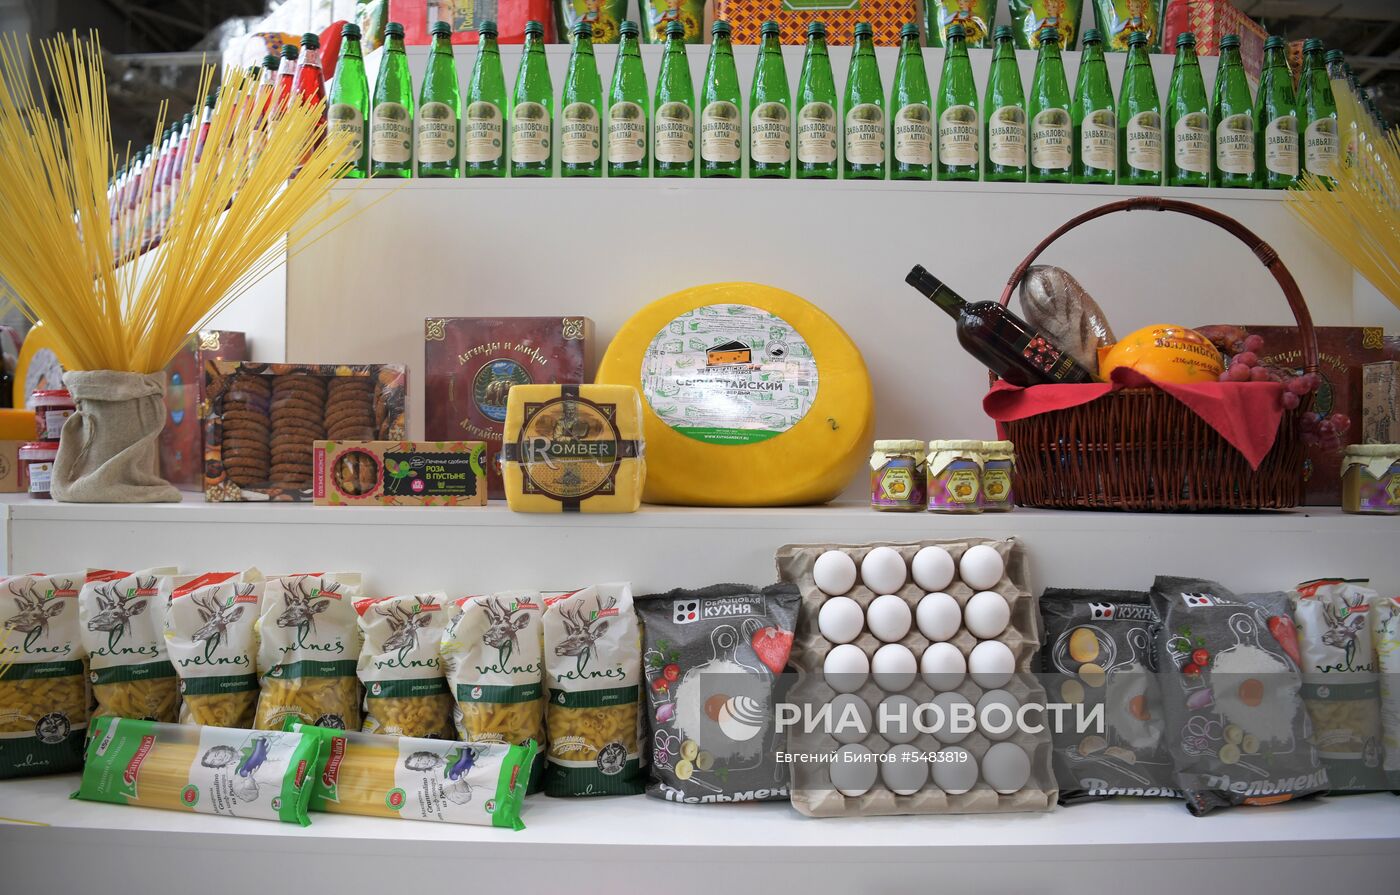 XIV Всероссийский форум-выставка "Госзаказ - за честные закупки"